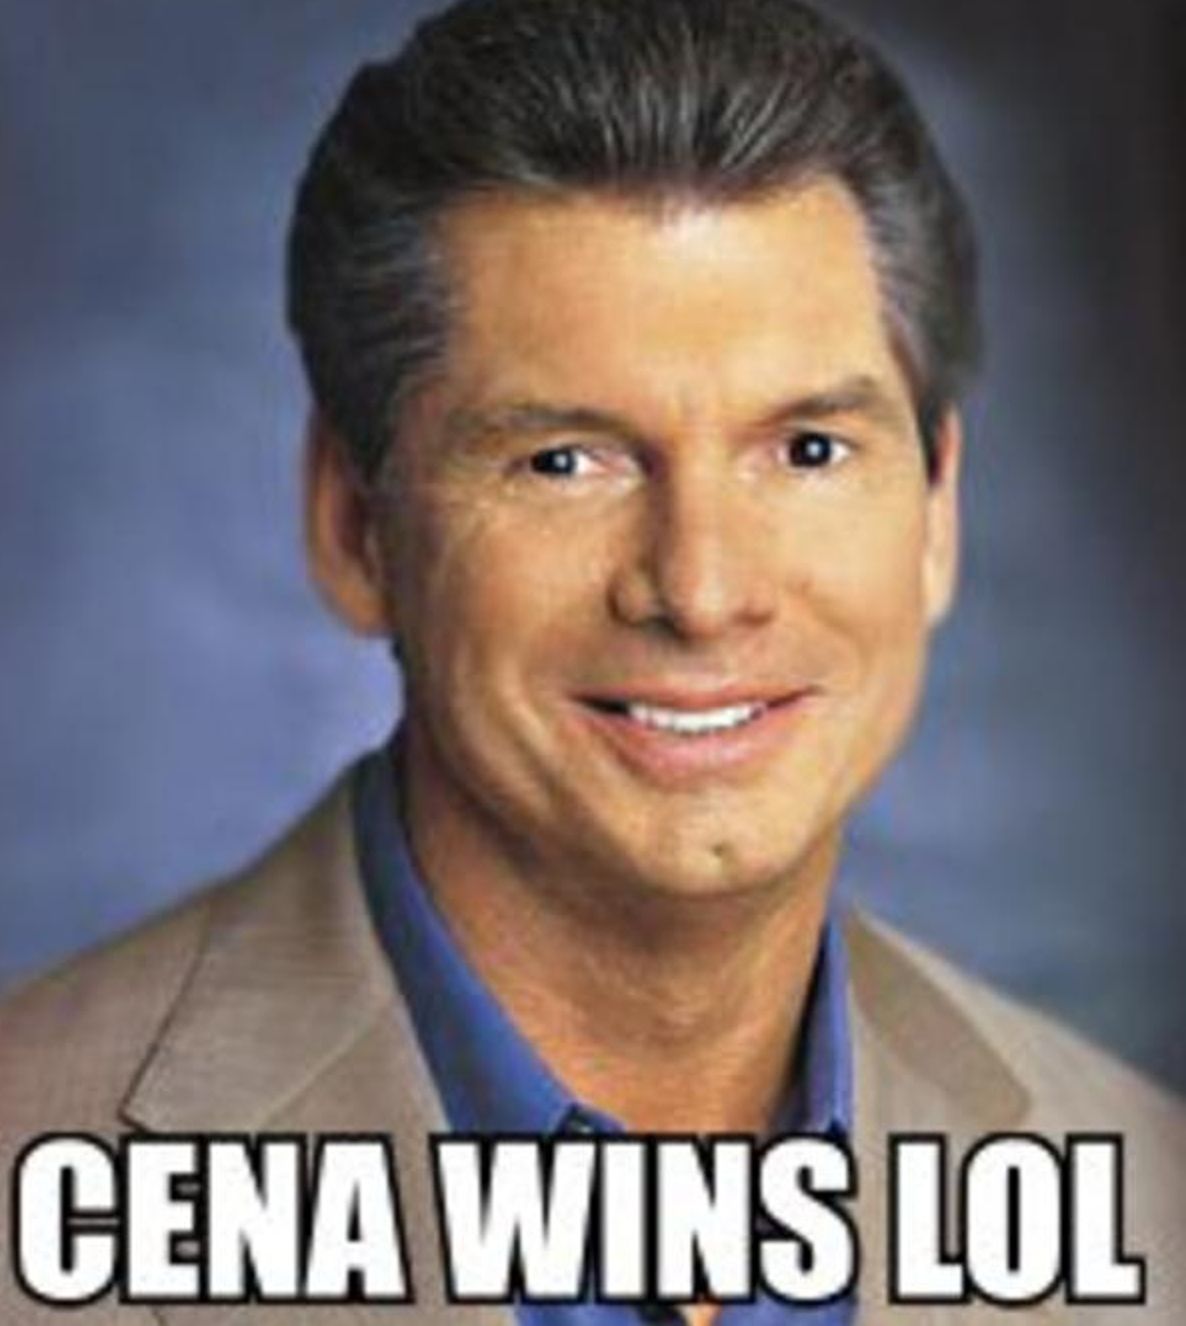 Vince McMahon with the famous Cena Wins LOL caption